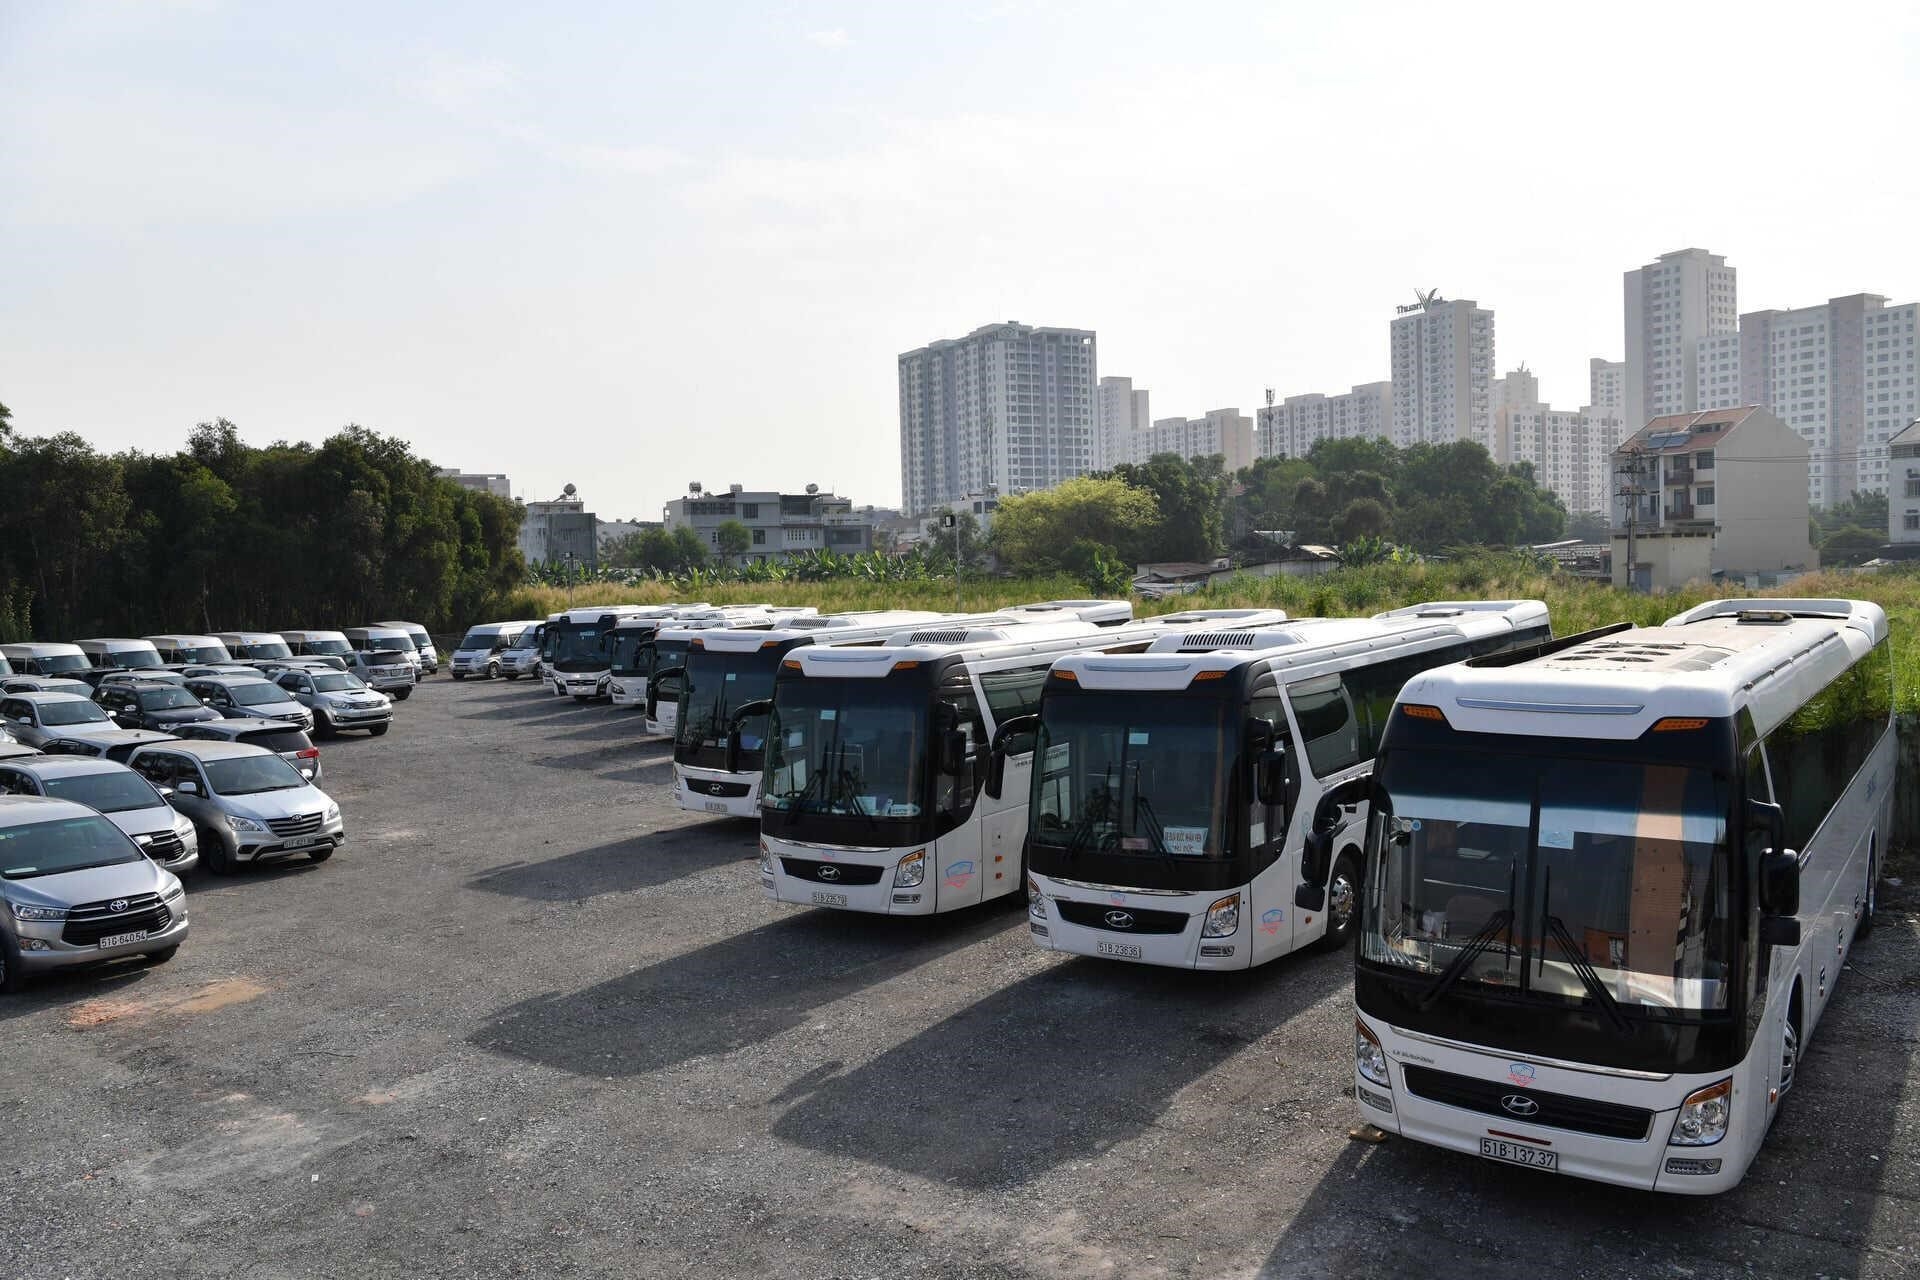 Thanhhungtourist cung cấp dịch vụ cho thuê xe du lịch tại Nha Trang bao gồm các loại xe 4, 7, 16, 29, 45 chỗ mới.